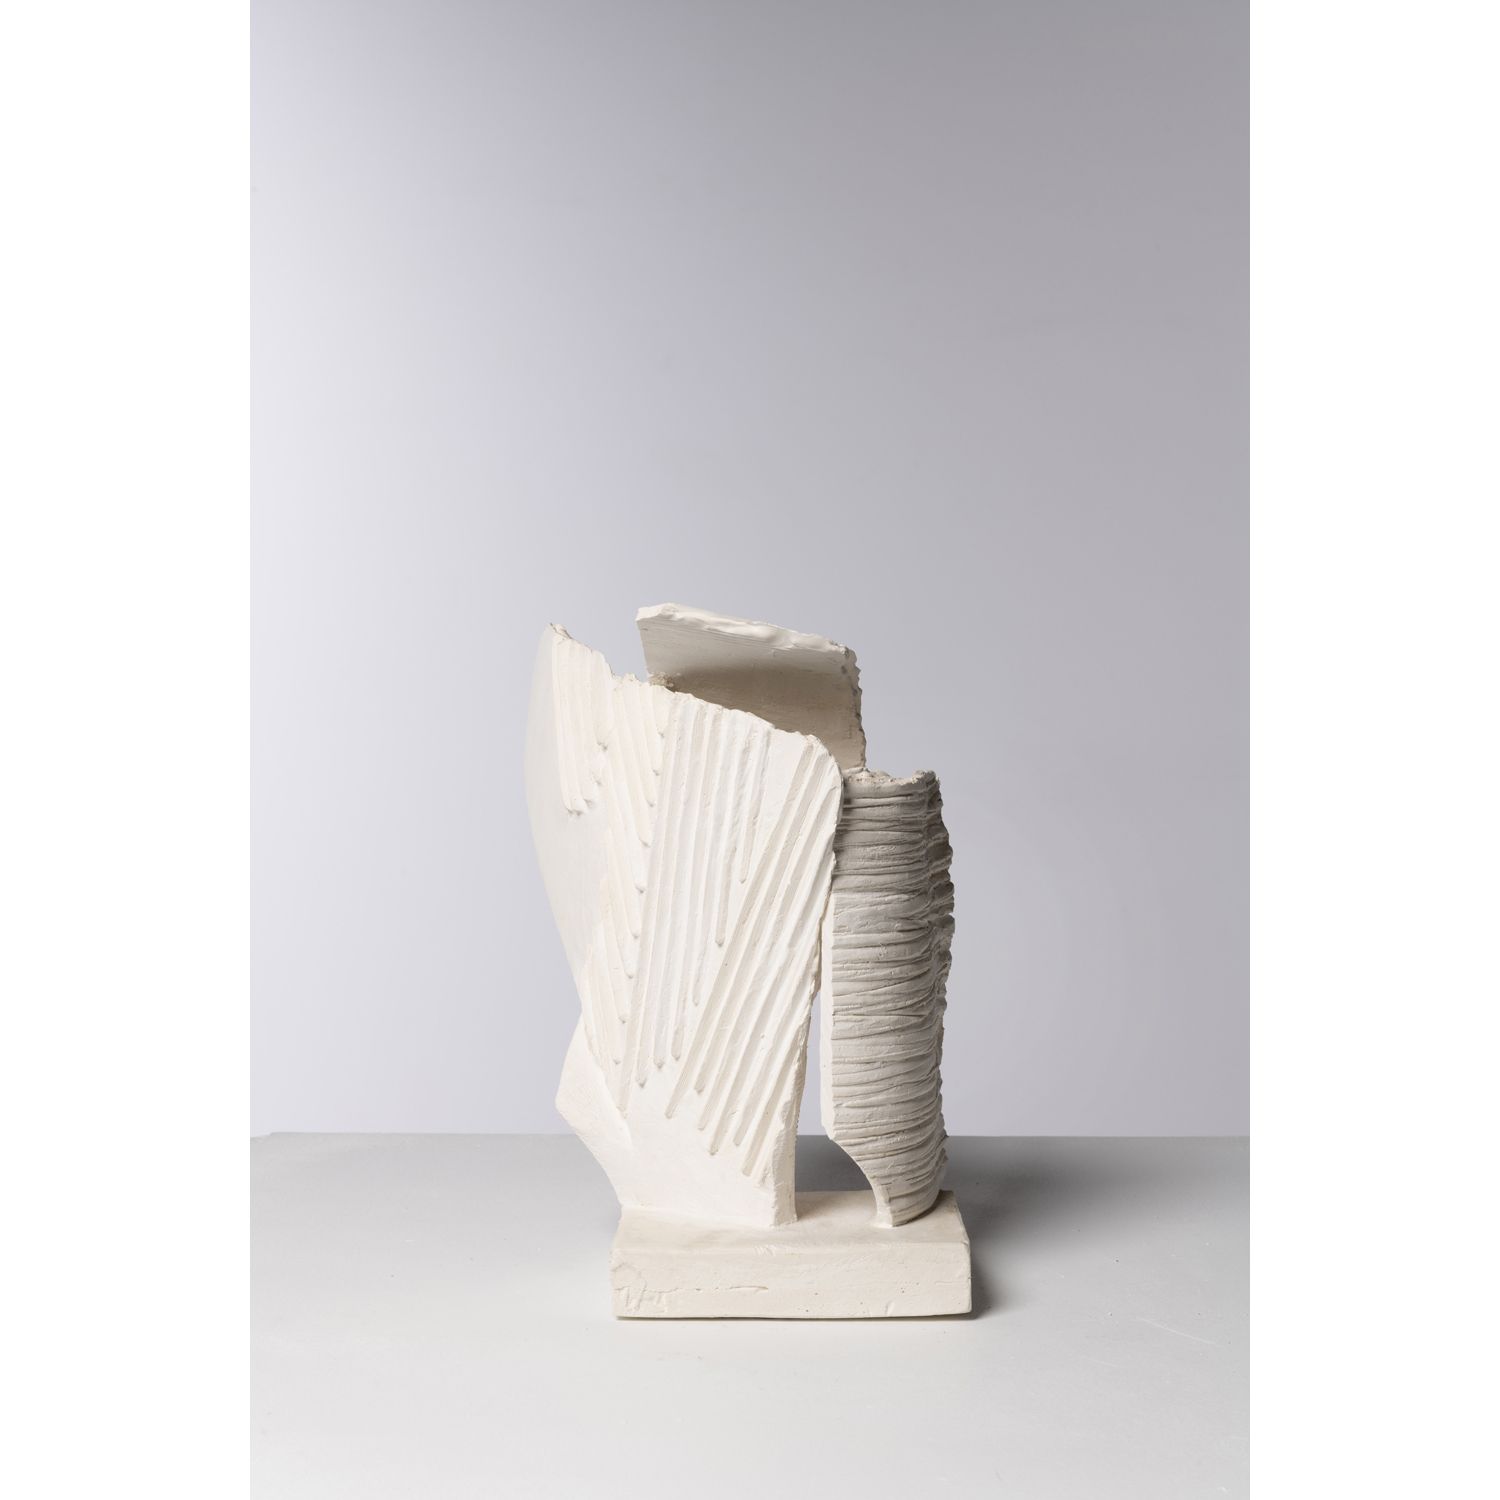 Viviane Hayez (1930-2017) Sculpture 维维安-哈耶兹（1930-2017）

雕塑

石膏

底座下有 "V.Hayez "的&hellip;